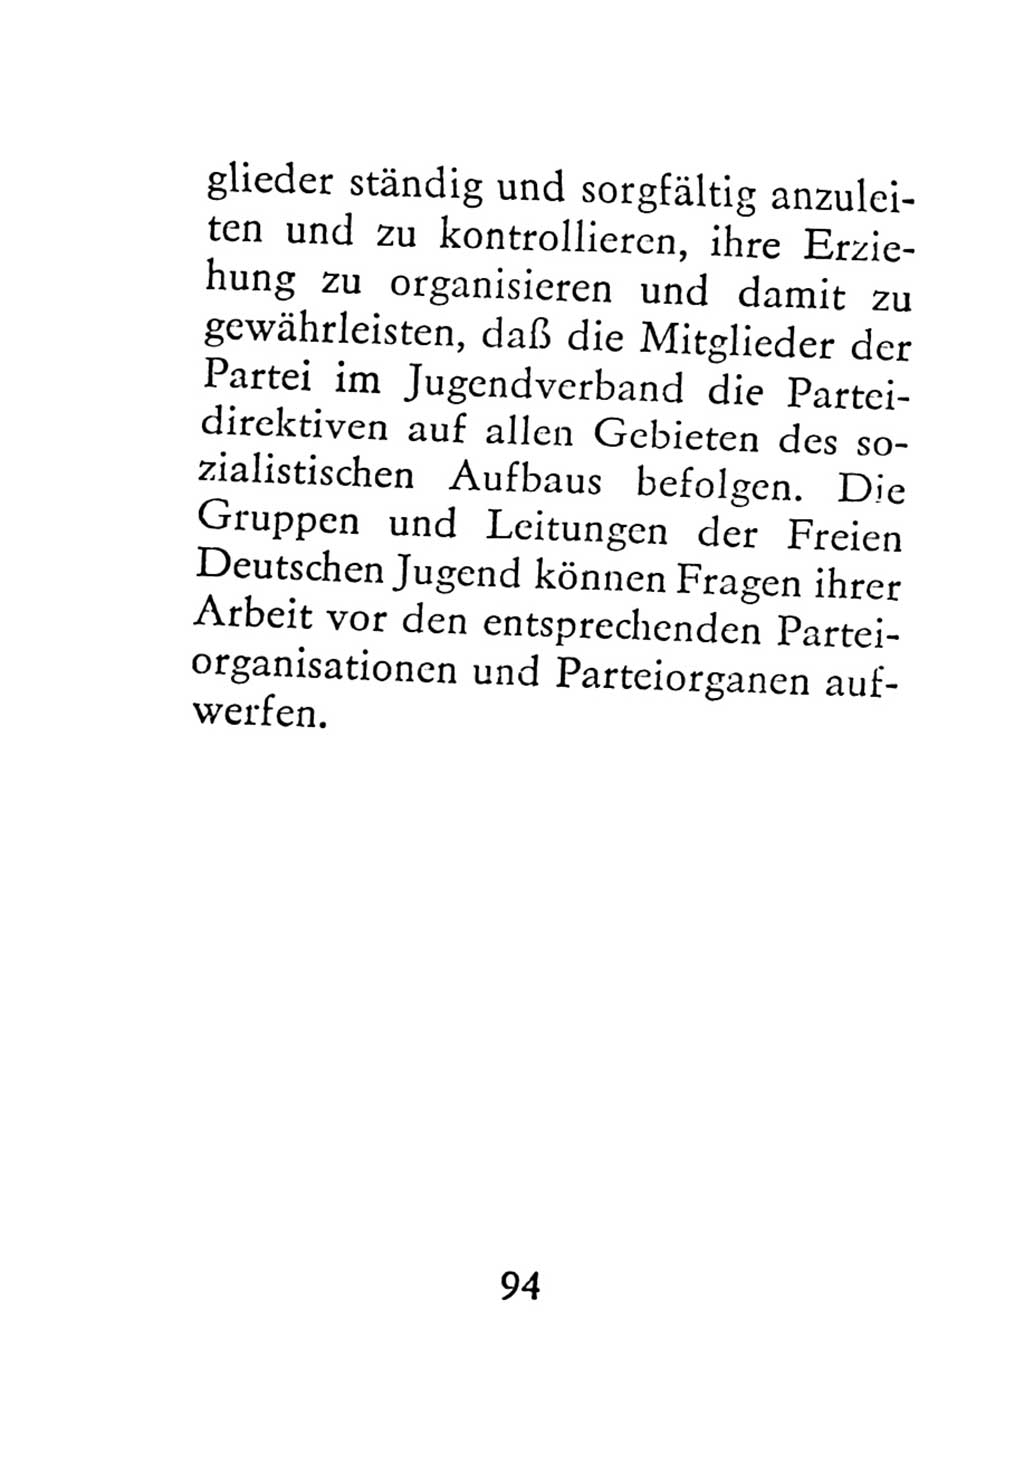 Statut der Sozialistischen Einheitspartei Deutschlands (SED) 1971, Seite 94 (St. SED DDR 1971, S. 94)